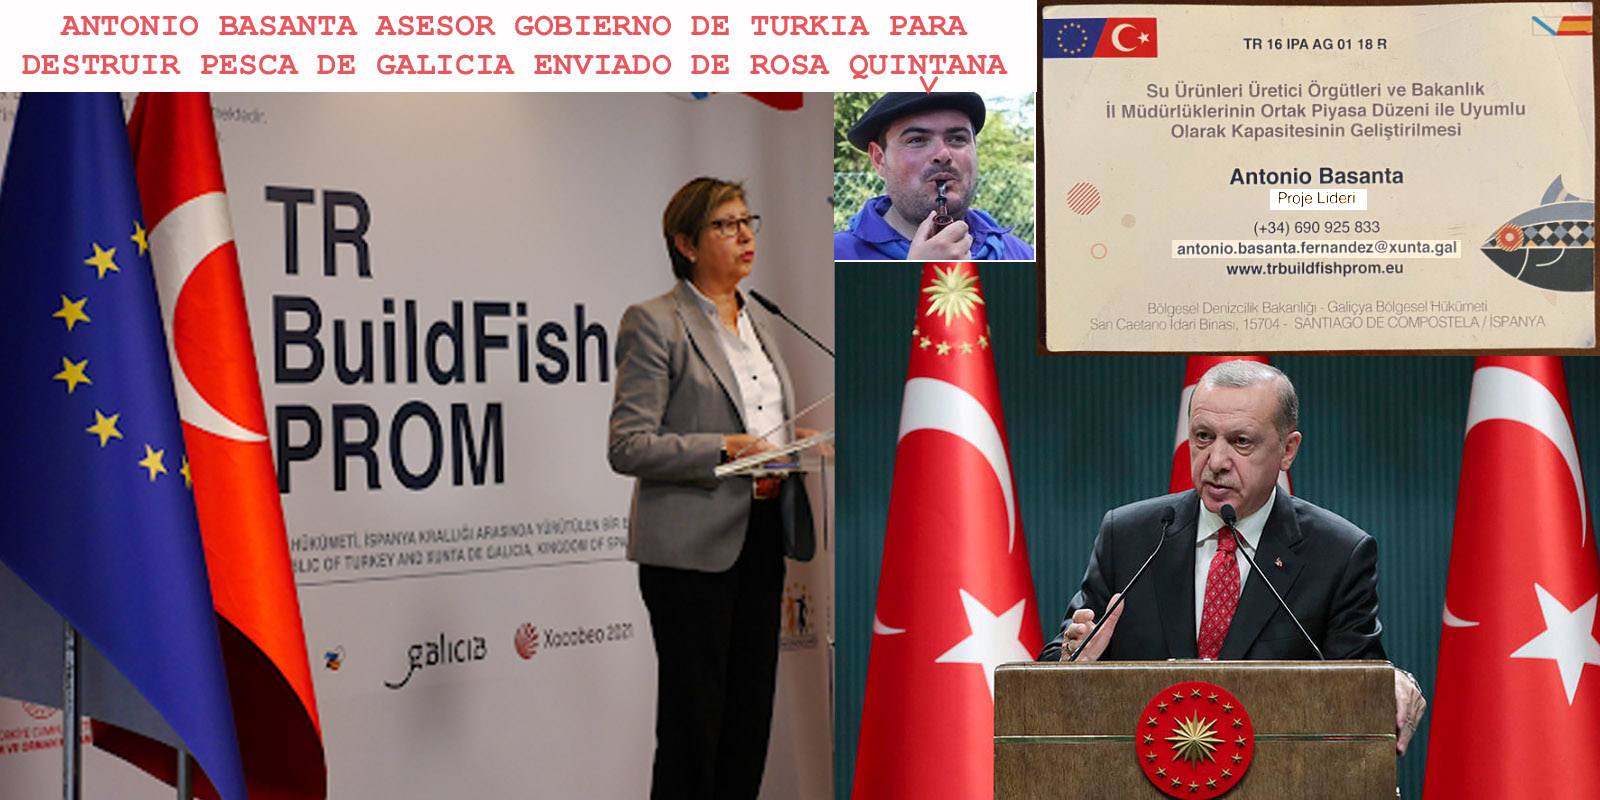 PPdeG utiliza un del partido infiltrado en la Xunta para colaborar con el  Gobierno de Turquia, Erdoğan para destruir sector pesquero de Galicia con  fondos europeos y violar los derechos humanos. -